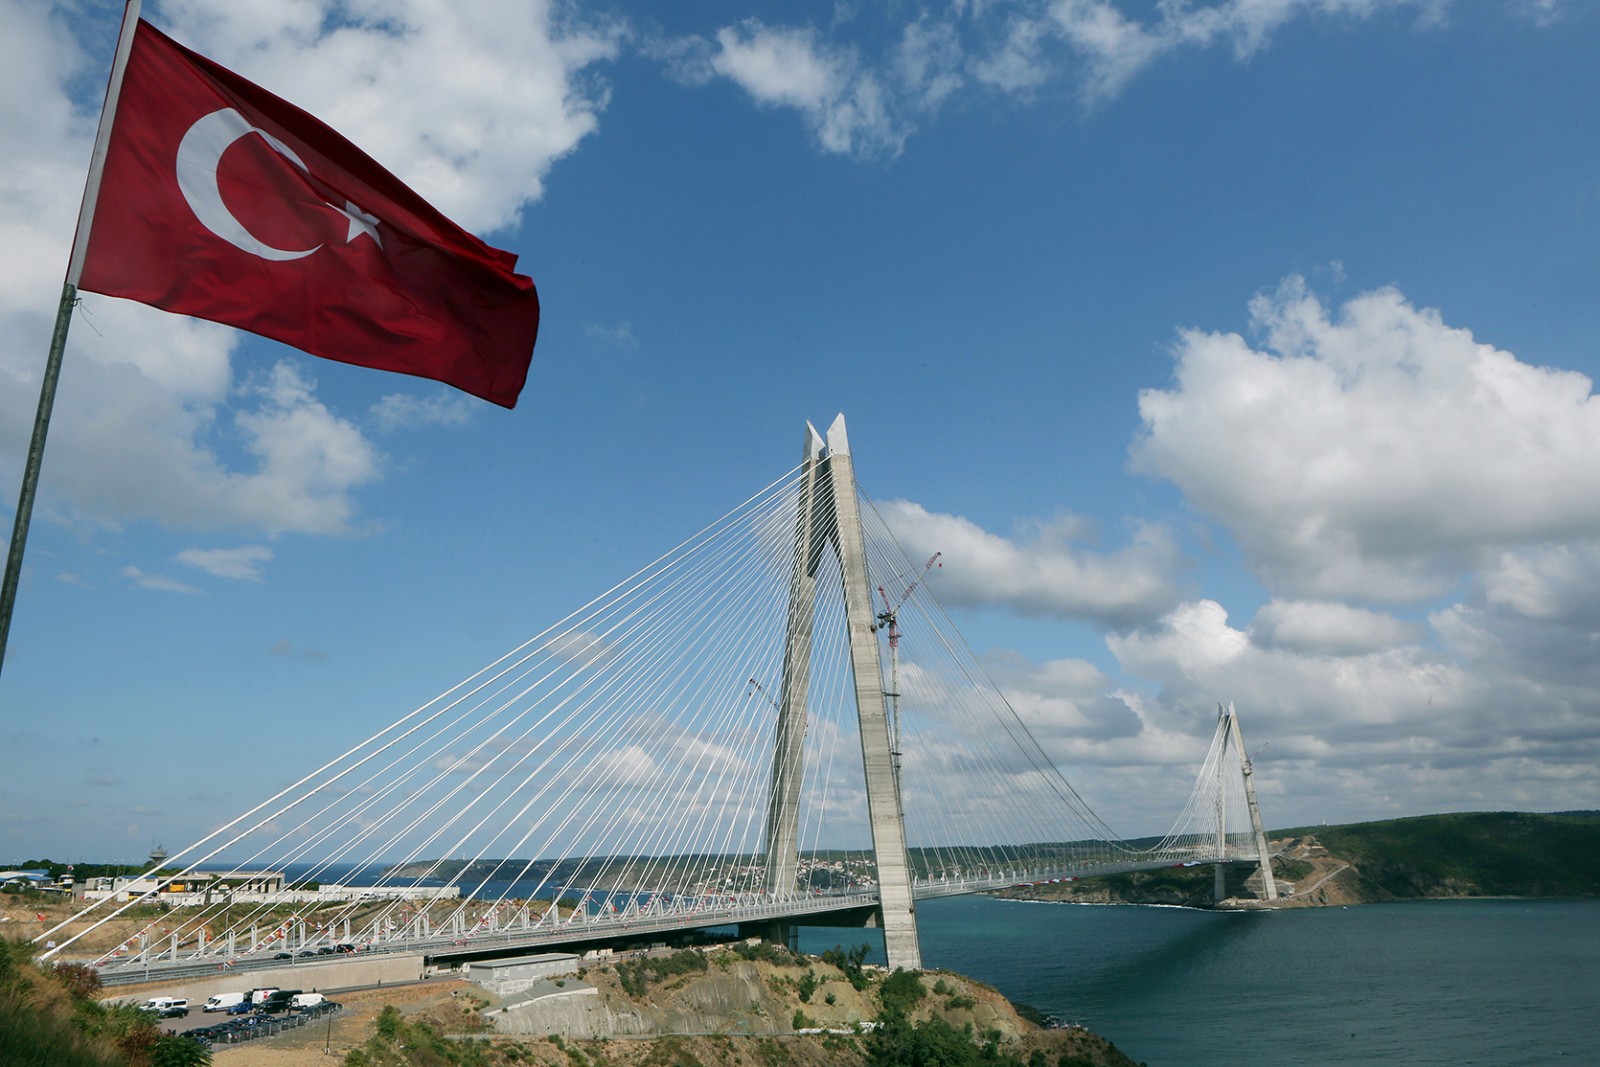 גשר סולטן סלים האכזר, הגשר השלישי שנבנה מעל הבוספורוס ונקרא על שם המנהיג העות'מאני שהחל את התפשטות האימפריה לכיוון אירופה, שעות ספורות לפני חנוכתו, אוגוסט 2016. (צילום: Tolga Adanali, Depo Photos via AP).